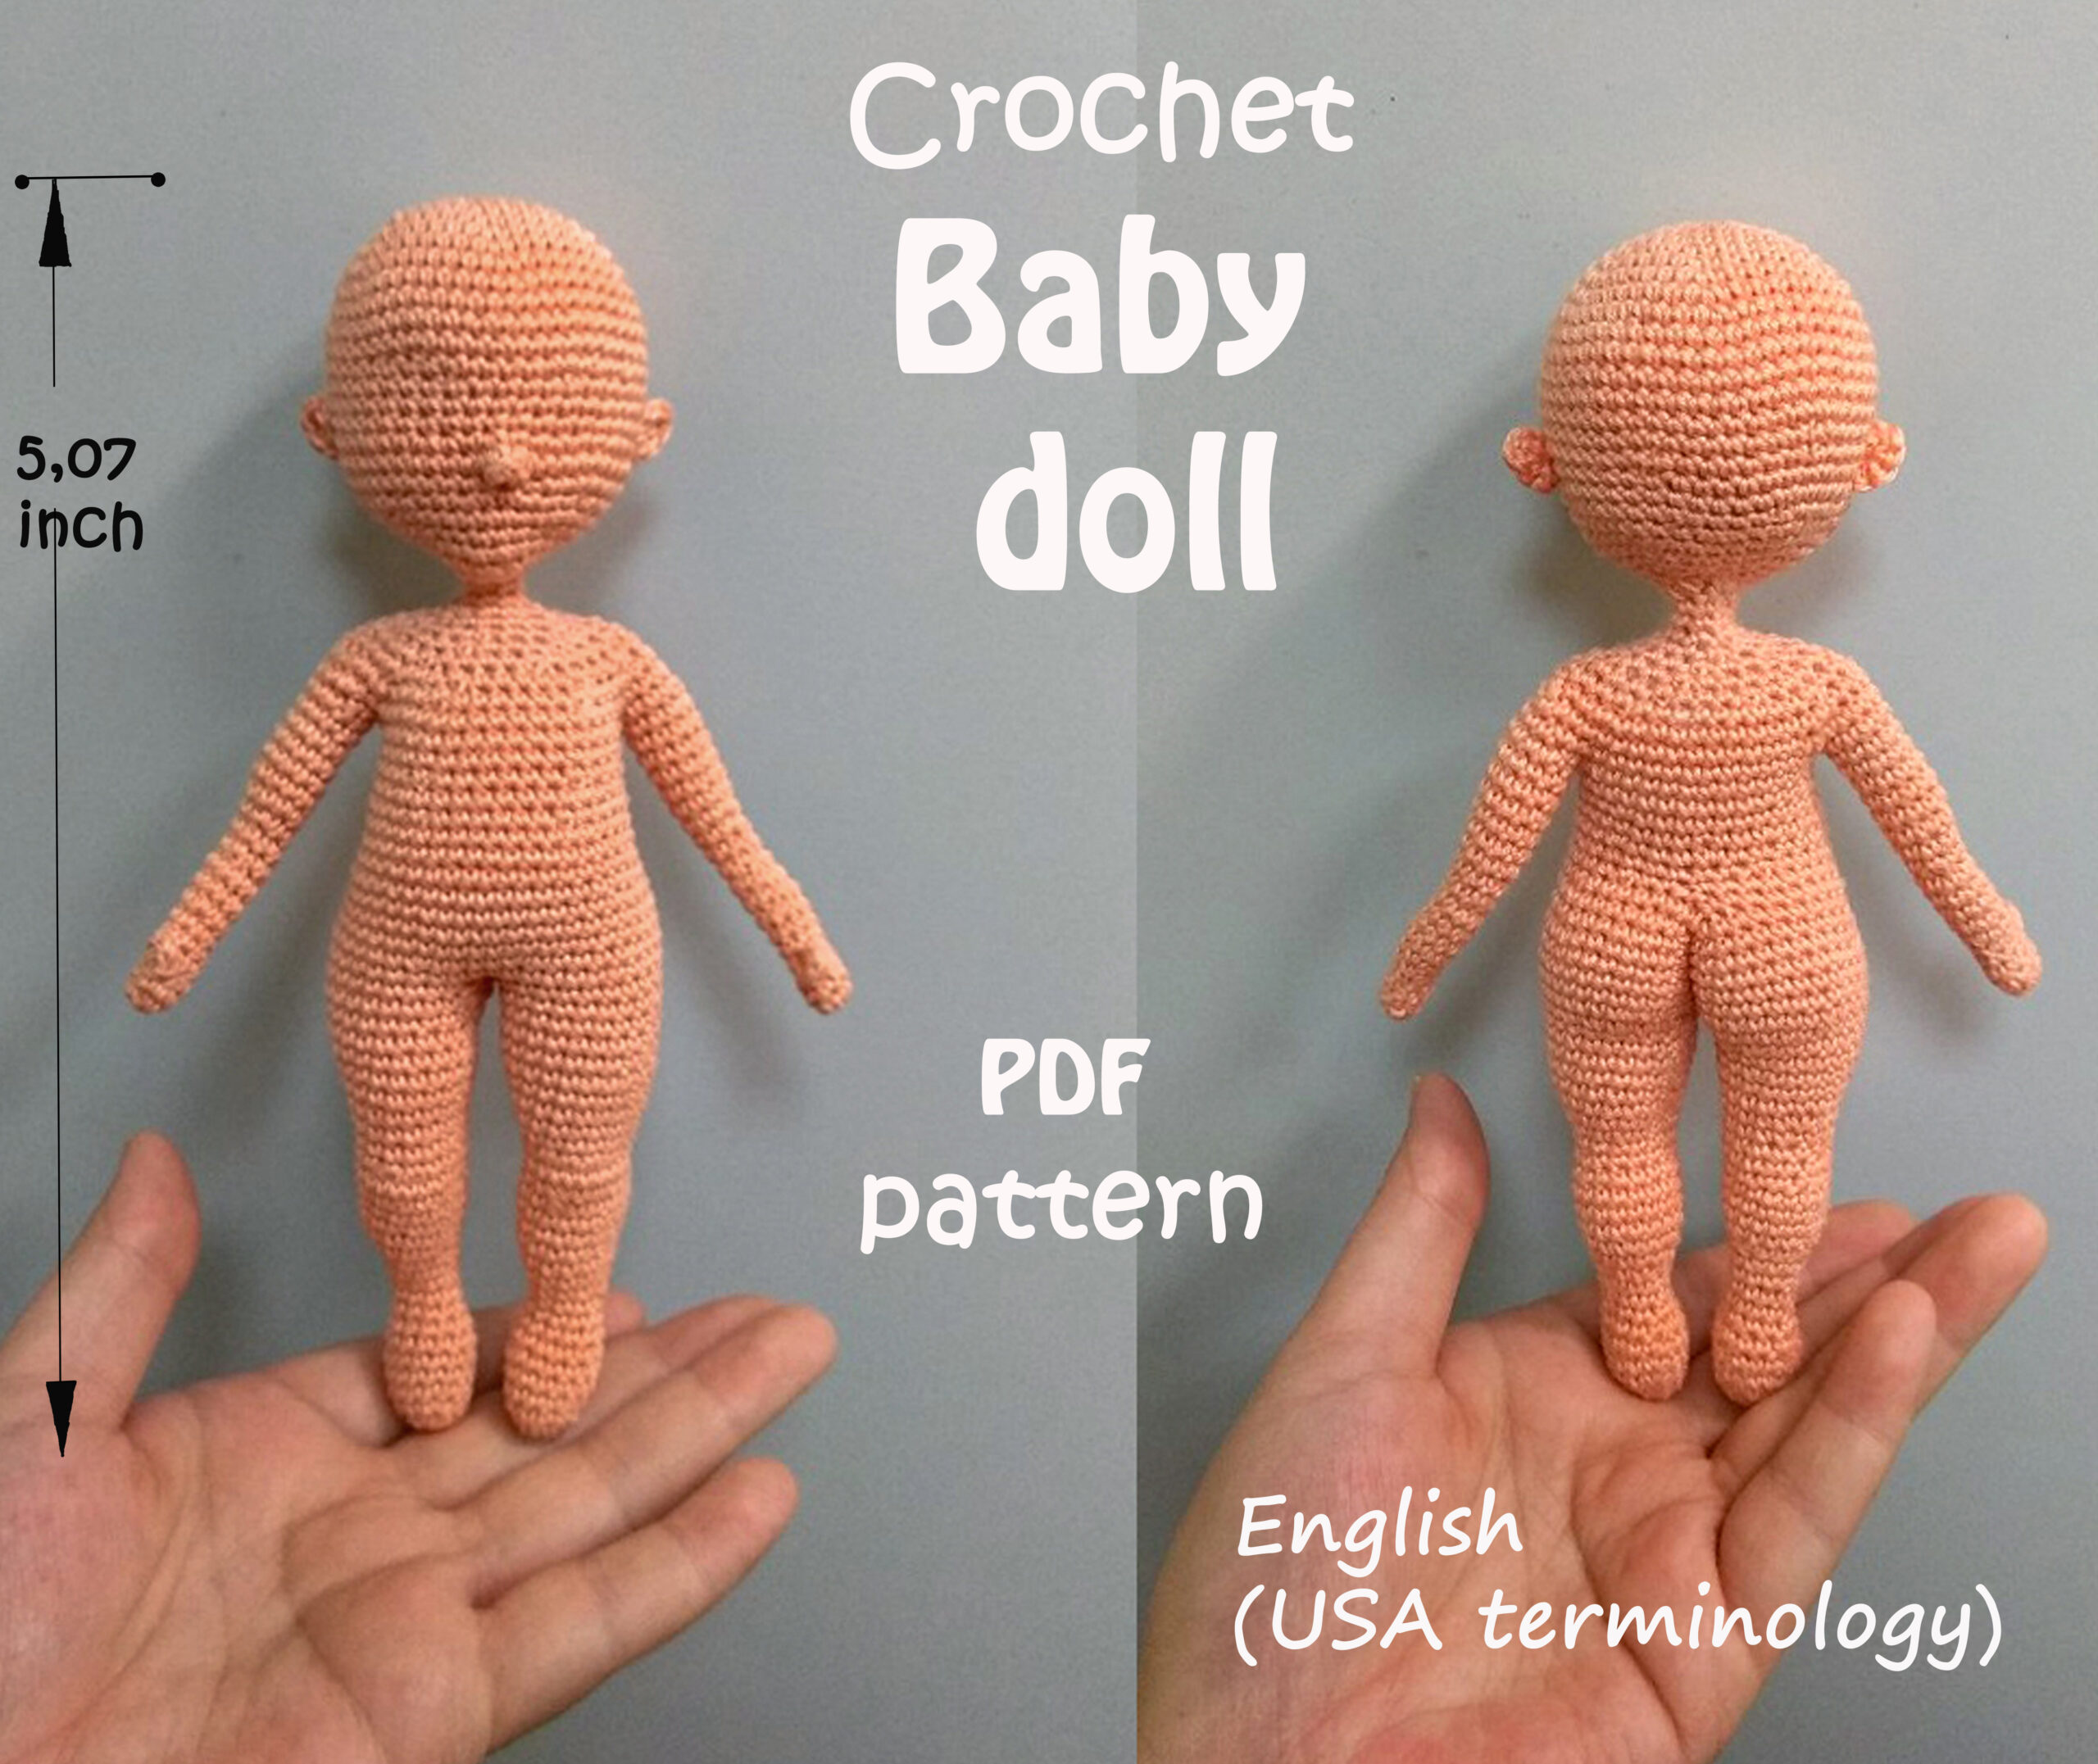 Moana Doll Crochet Pattern (Download Now) 